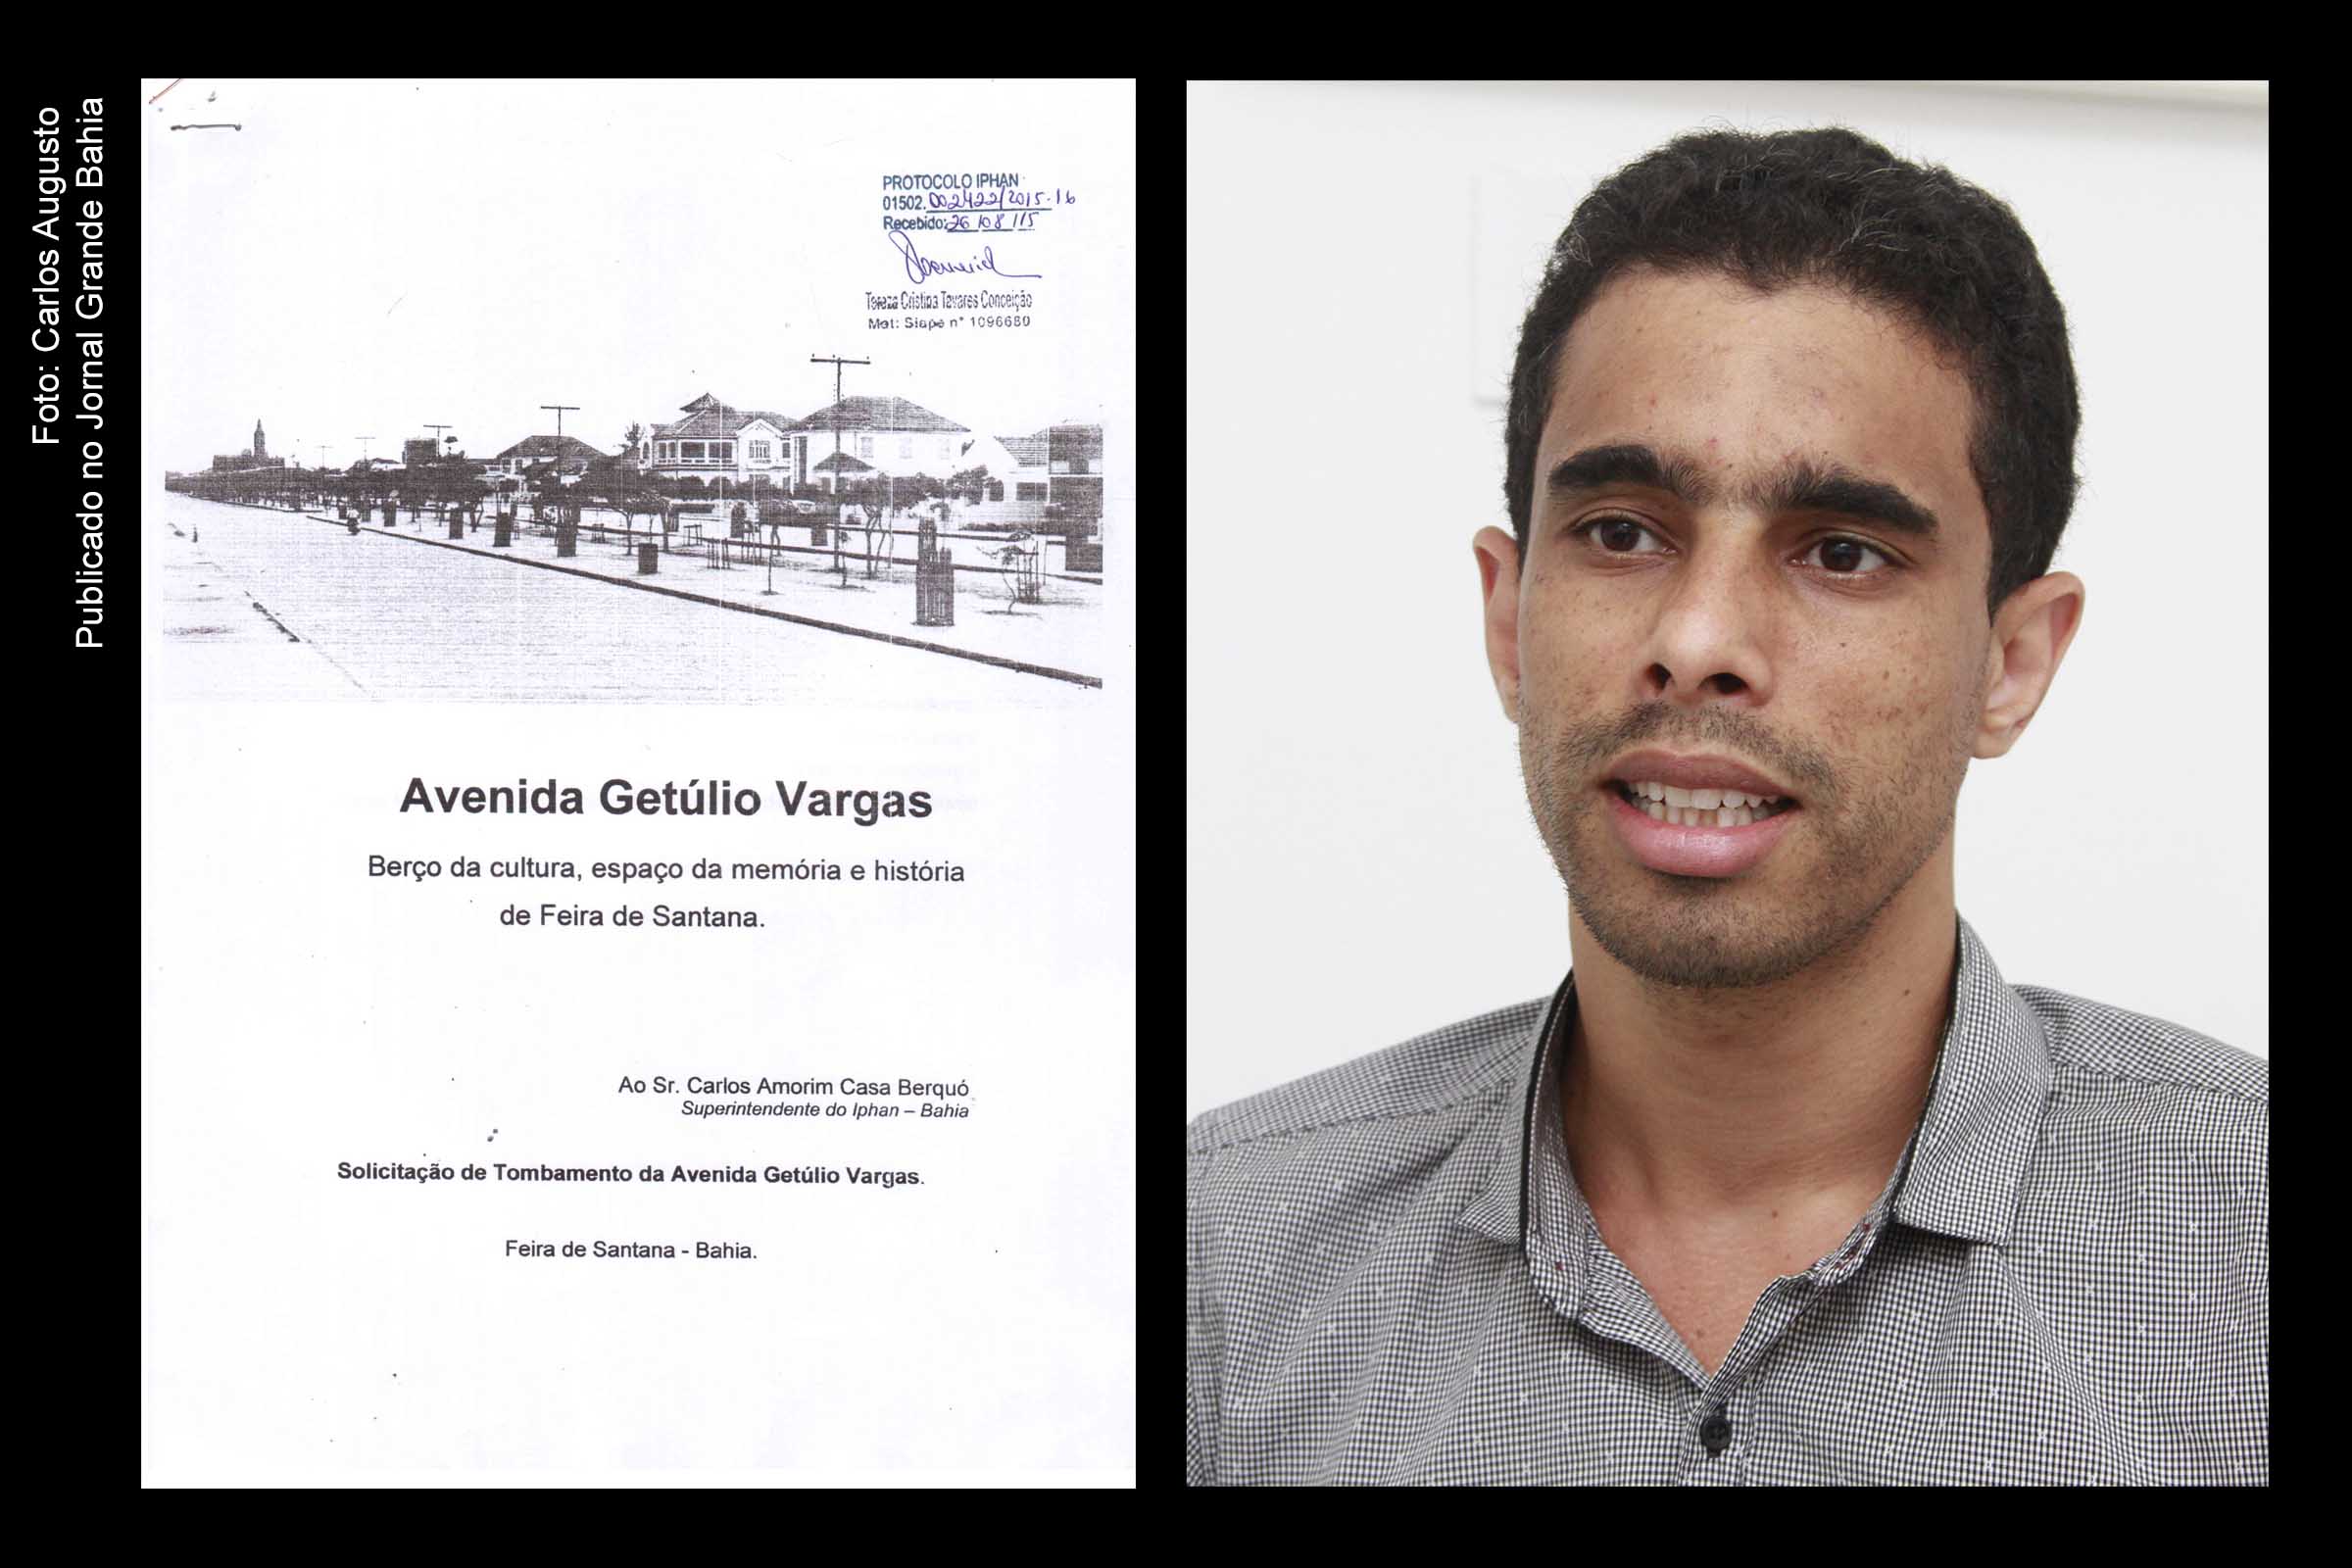 Leonardo Pedreira apresenta estudo histórico da Avenida Getúlio Vargas em Feira de Santana.